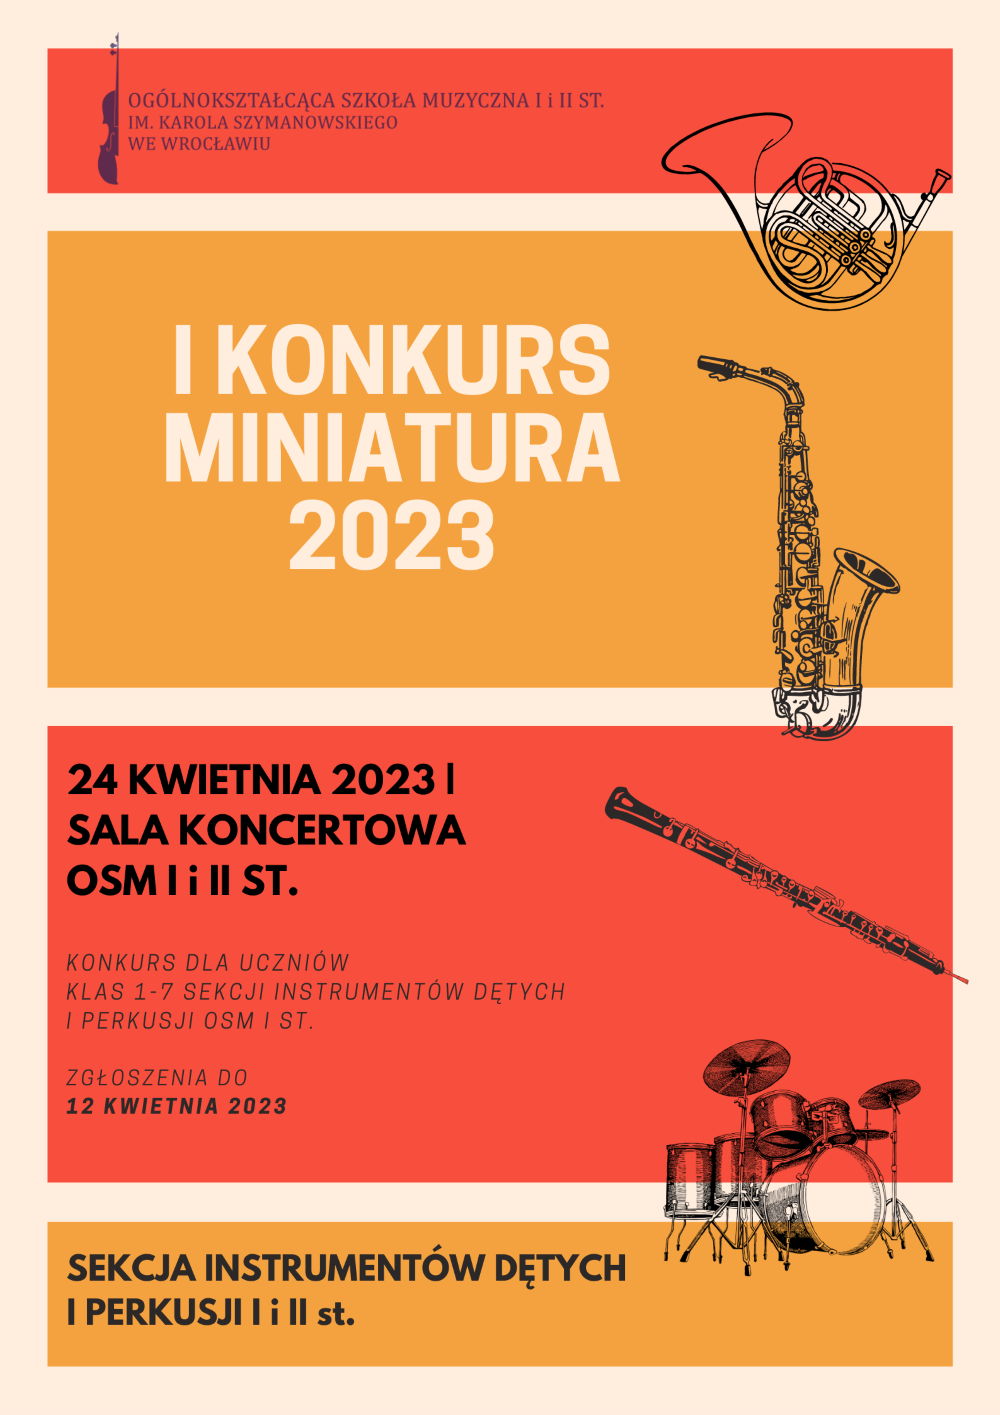 plakat w tonacji czerwono-pomarańczowej, zawiera napis "I Konkurs Miniatura 2023", grafiki instrumentów dętych oraz logo szkoły